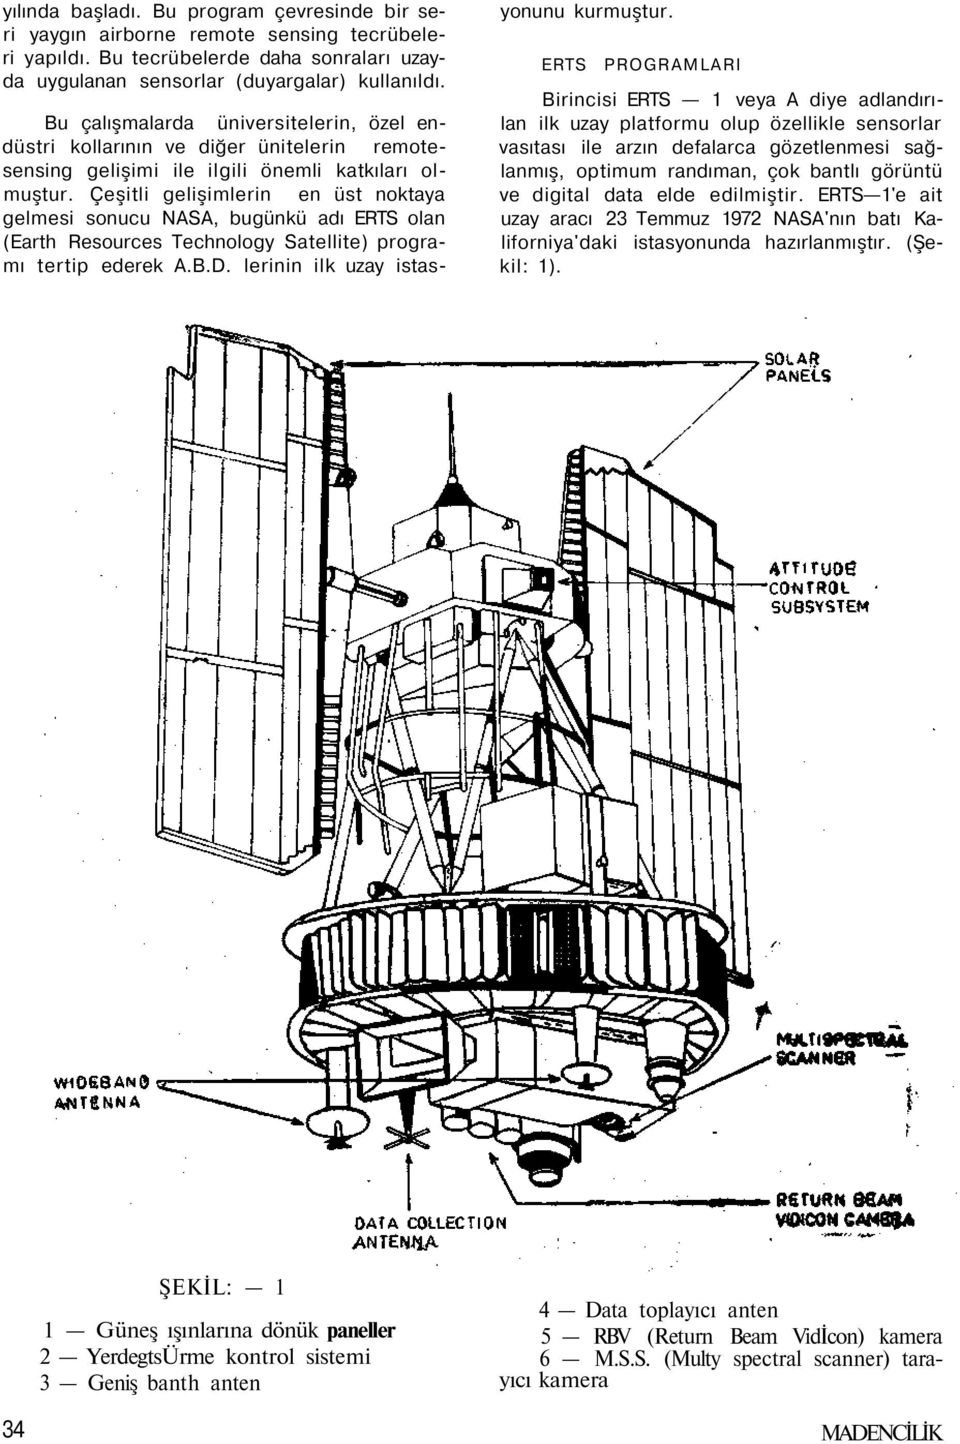 Çeşitli gelişimlerin en üst noktaya gelmesi sonucu NASA, bugünkü adı ERTS olan (Earth Resources Technology Satellite) programı tertip ederek A.B.D. lerinin ilk uzay istasyonunu kurmuştur.